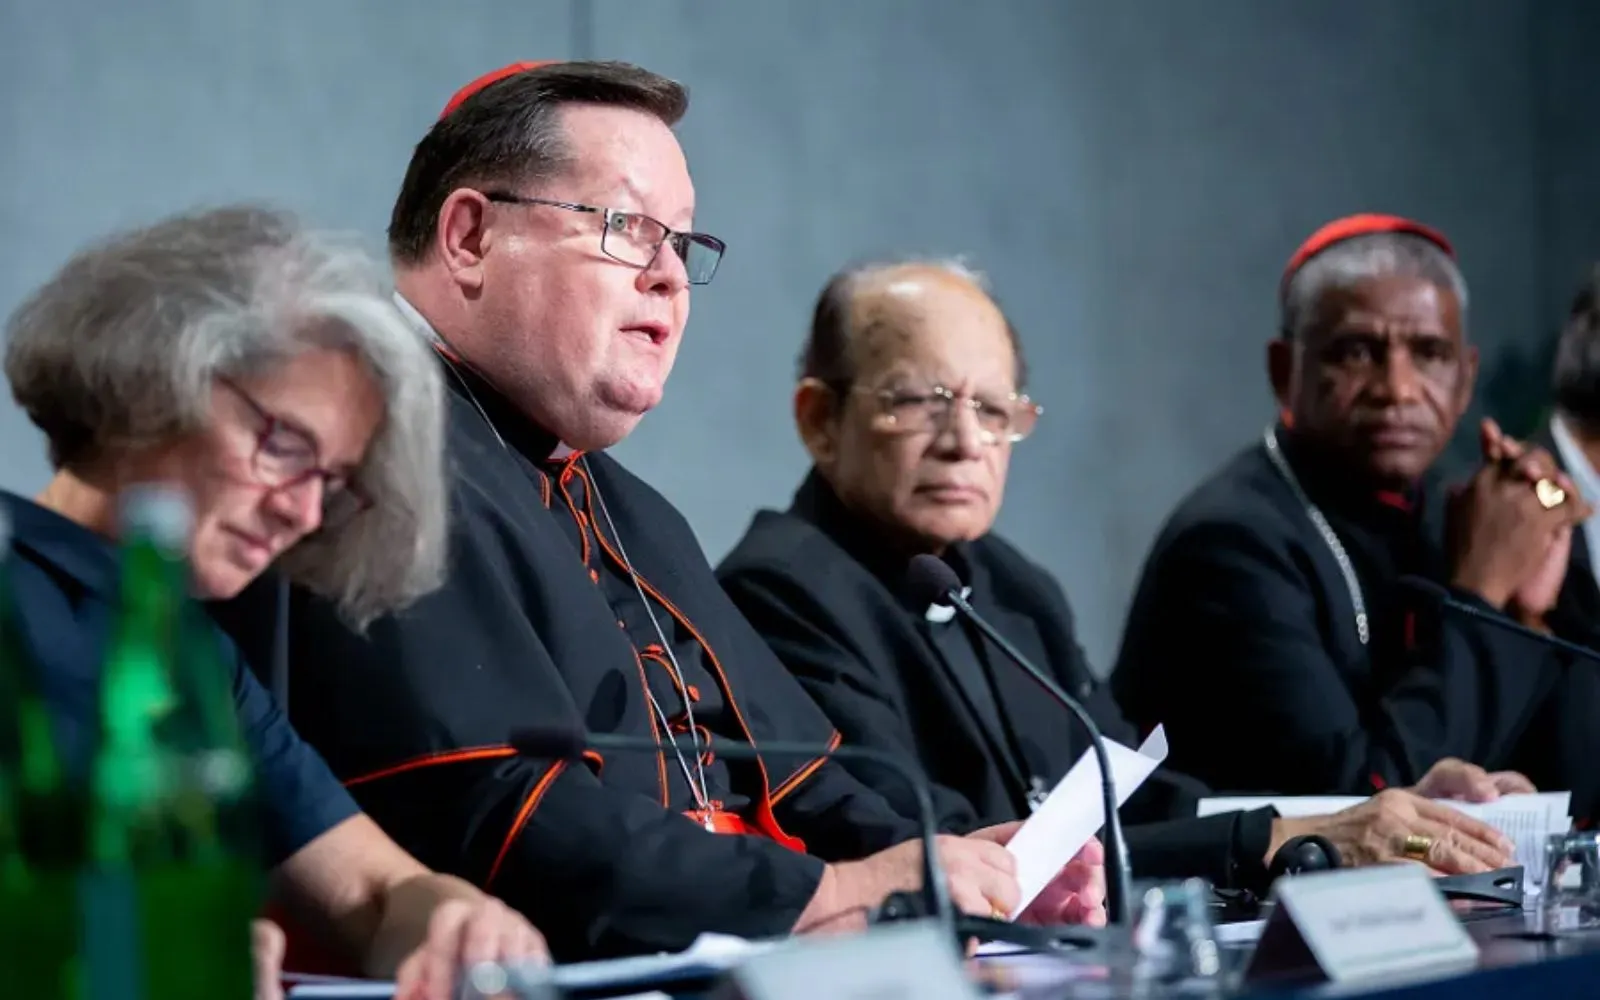 El Cardenal Gerald Lacroix, Arzobispo de Quebec (Canadá), habla en una rueda de prensa sobre el Sínodo en la oficina de prensa de la Santa Sede, el 9 de octubre de 2018.?w=200&h=150